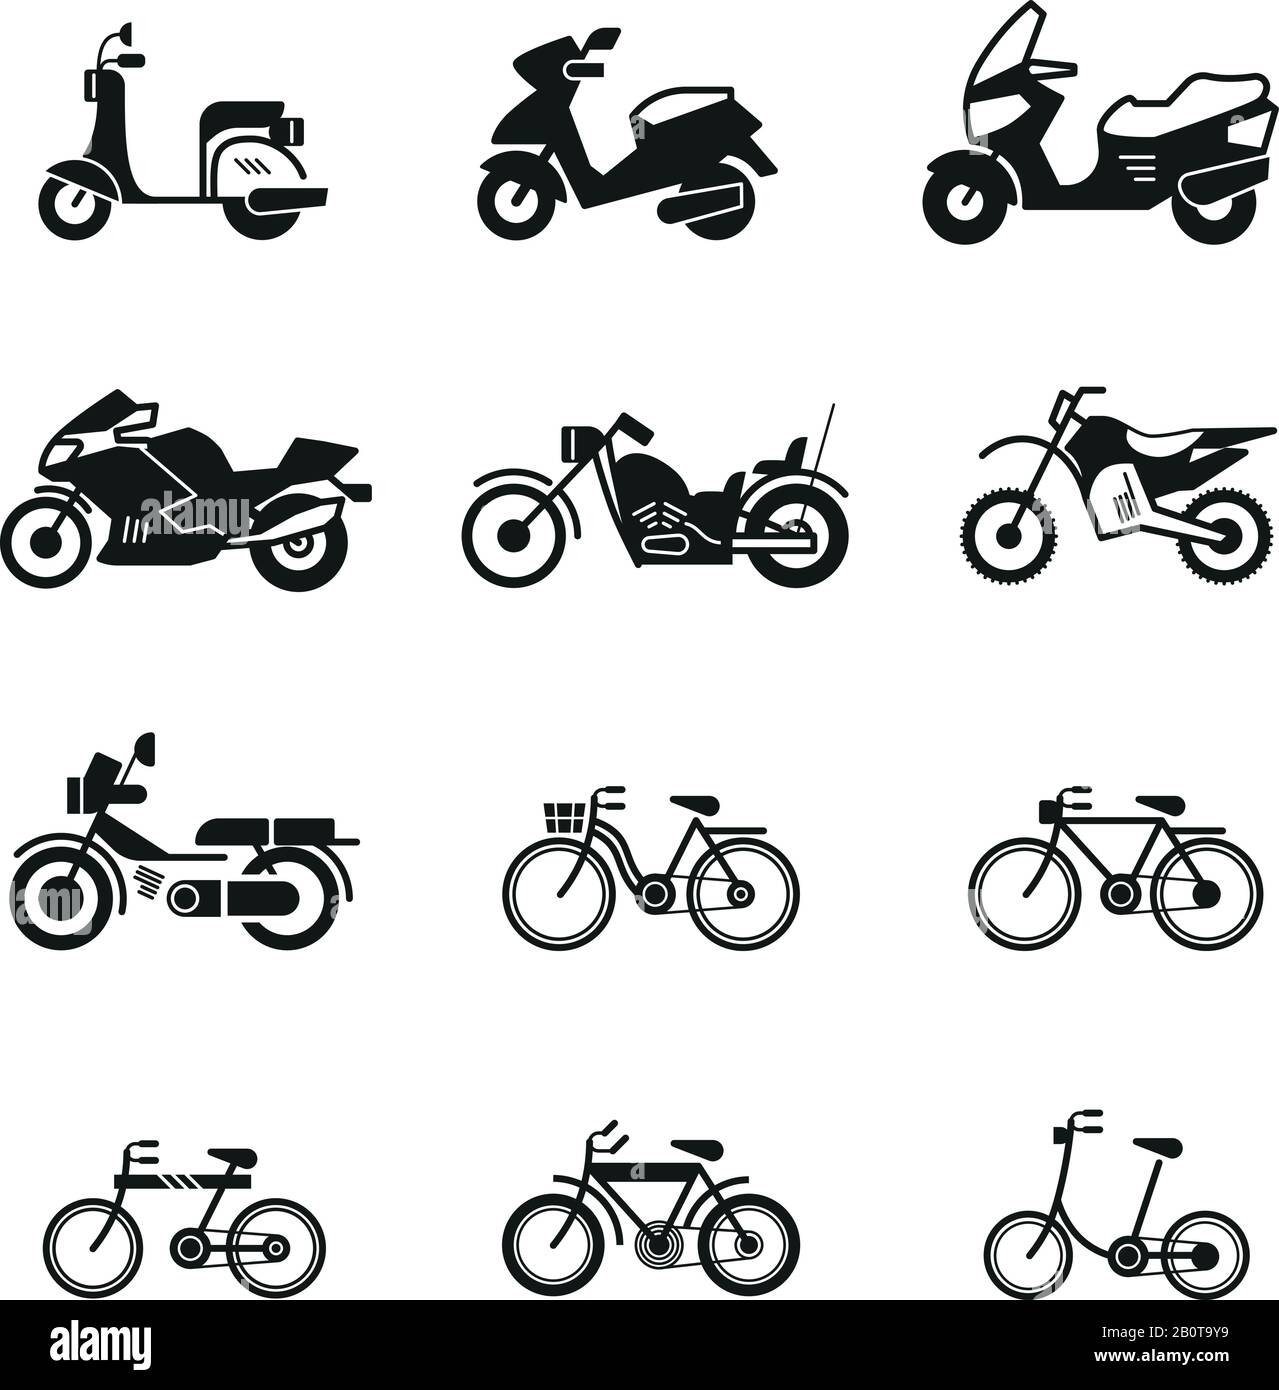 Symbole für Silhouette von Motorrad-, Motorrad-, Roller-, Chopper- und Fahrradvektoren. Abbildung von Motorrad und Motorroller mit Geschwindigkeit und Motorrad Stock Vektor